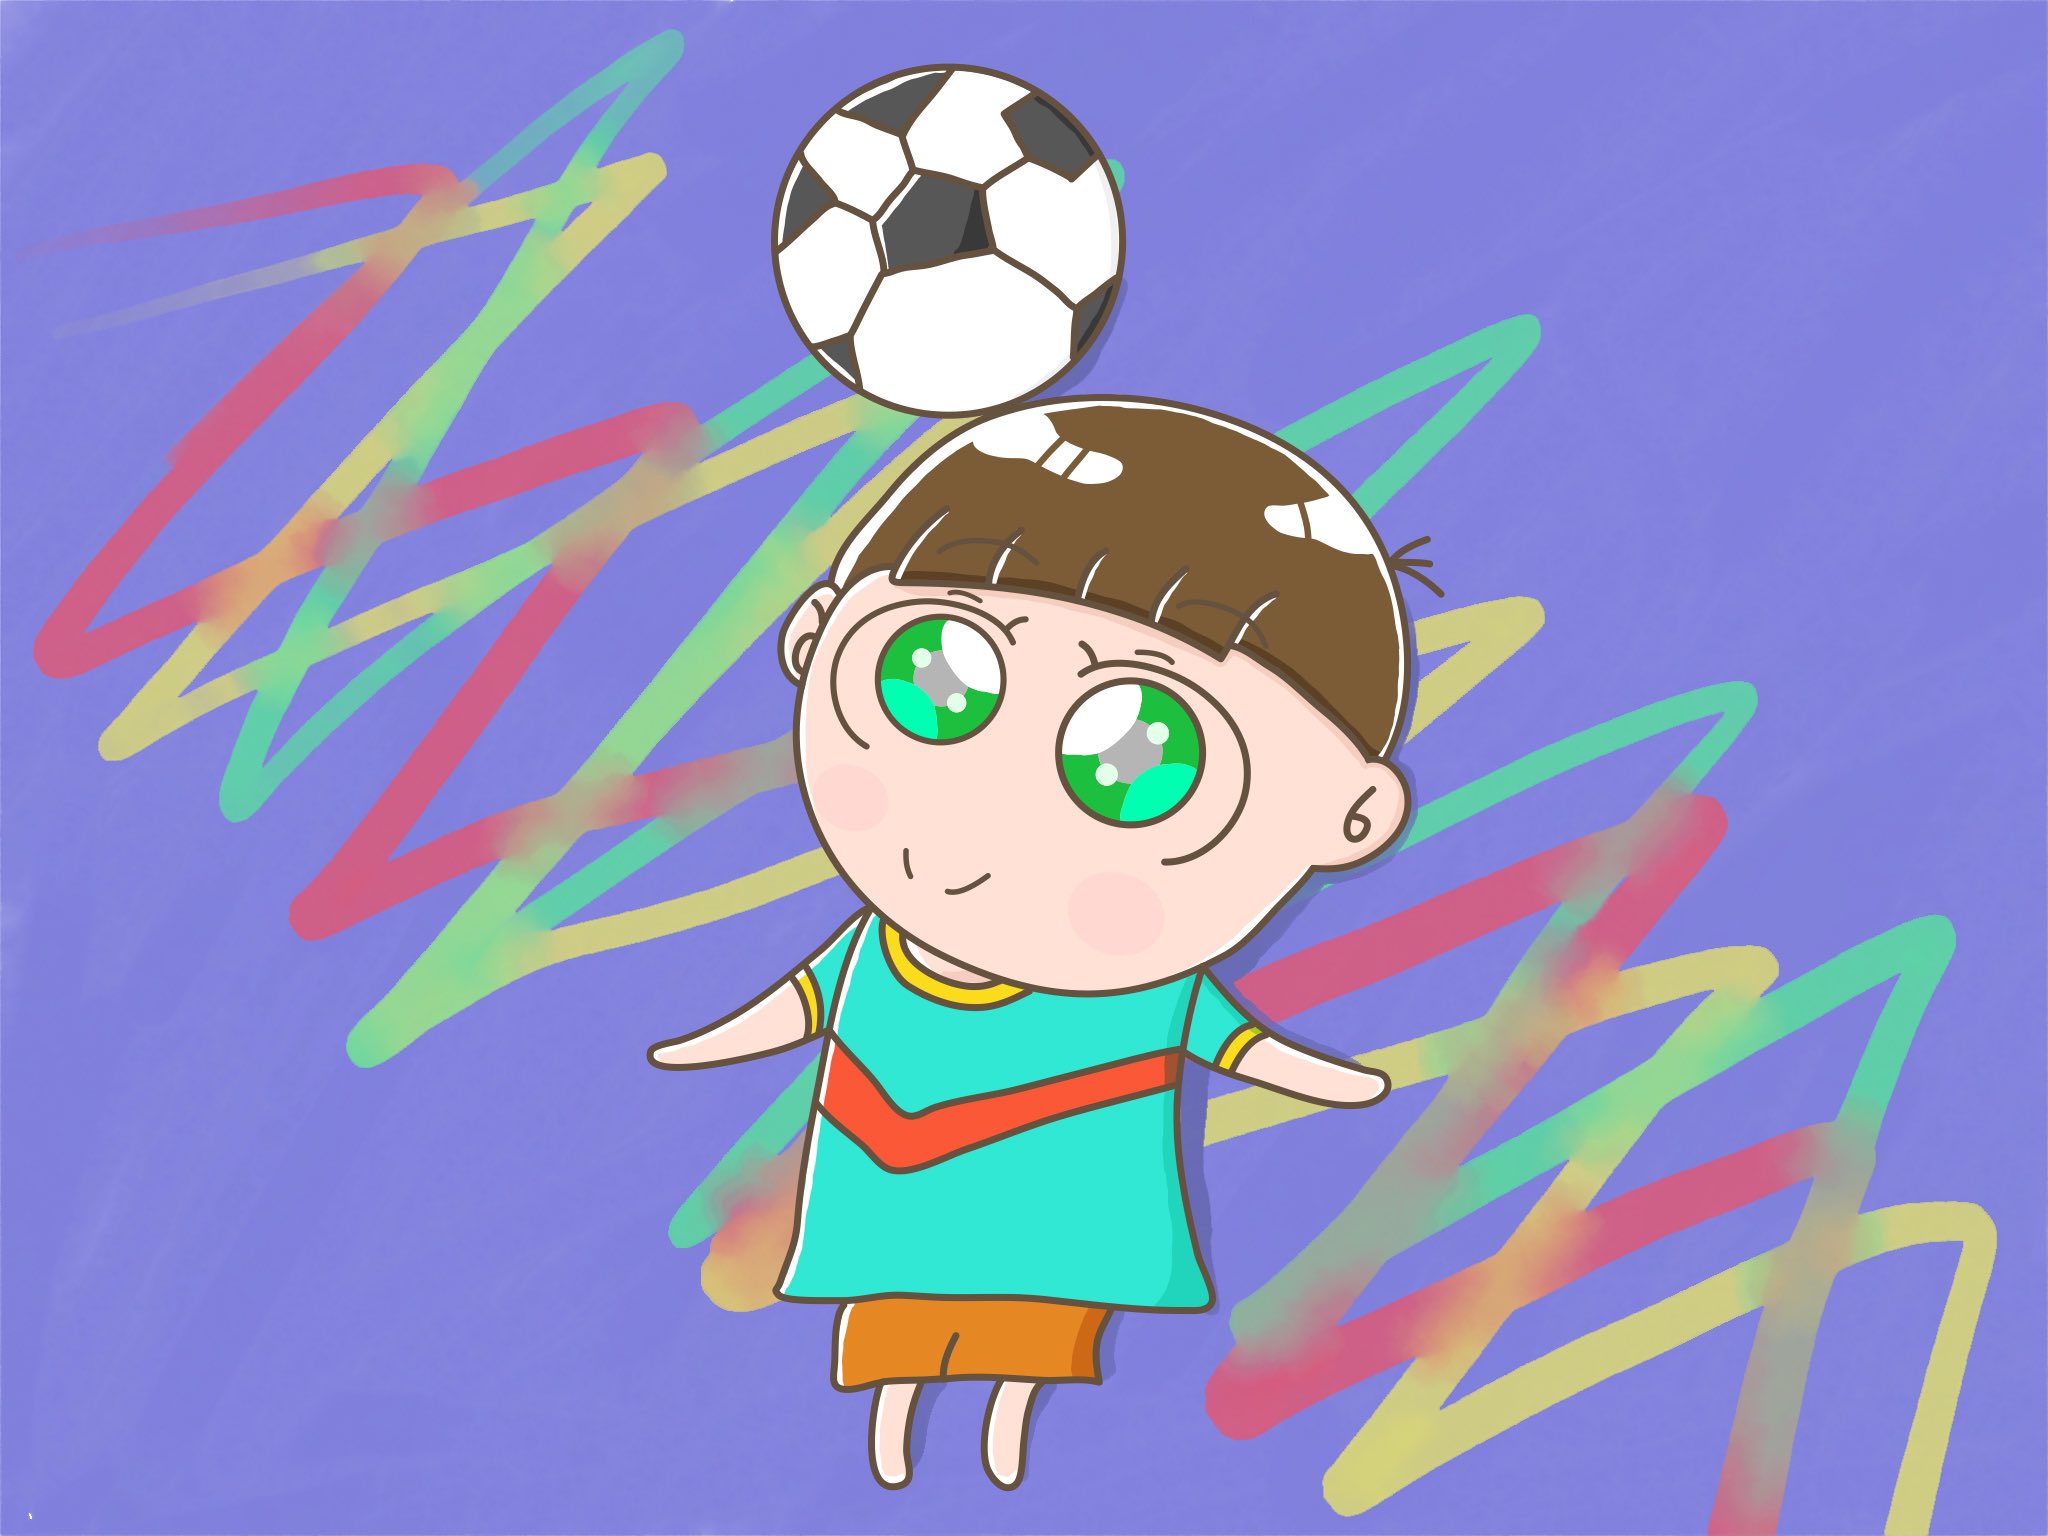 Twitter 上的 Aki かわいい子供 動物イラスト描きます サッカー少年 イラストレーター イラスト 毎日イラスト 芸術同盟 子供 アート 男の子 小学生 サッカー スポーツ 小学校 イラスト好きな人と繋がりたい かわいい 絵描きさんと繋がりたい イラスト